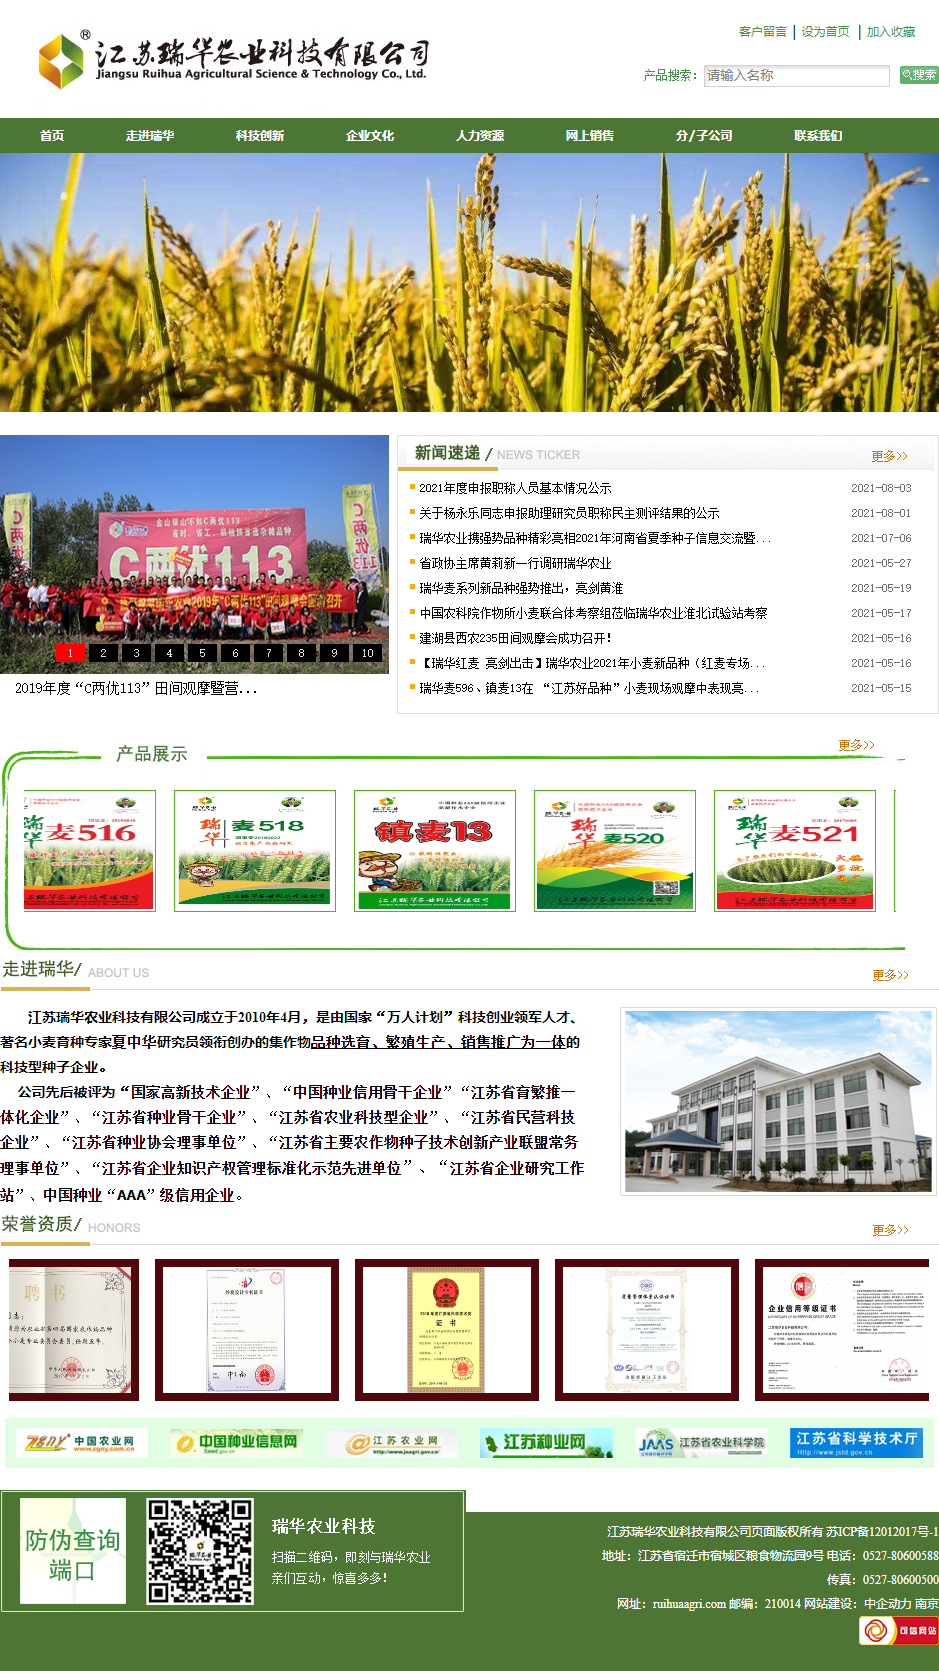 江苏瑞华农业科技有限公司网站案例